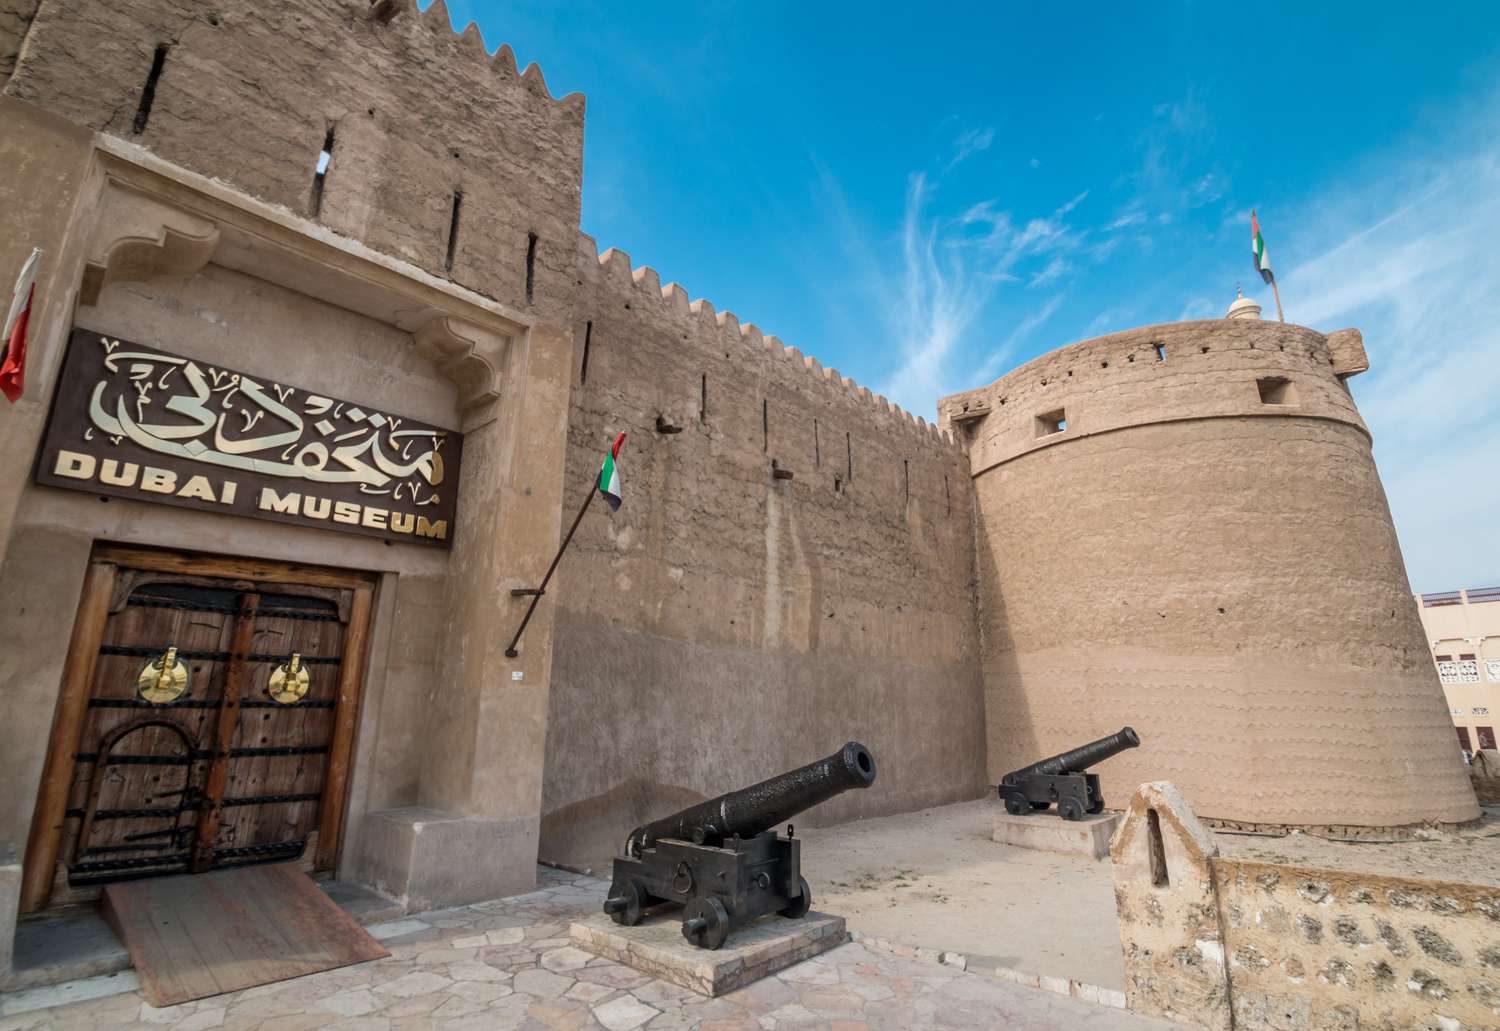 Dubai Historical Museum